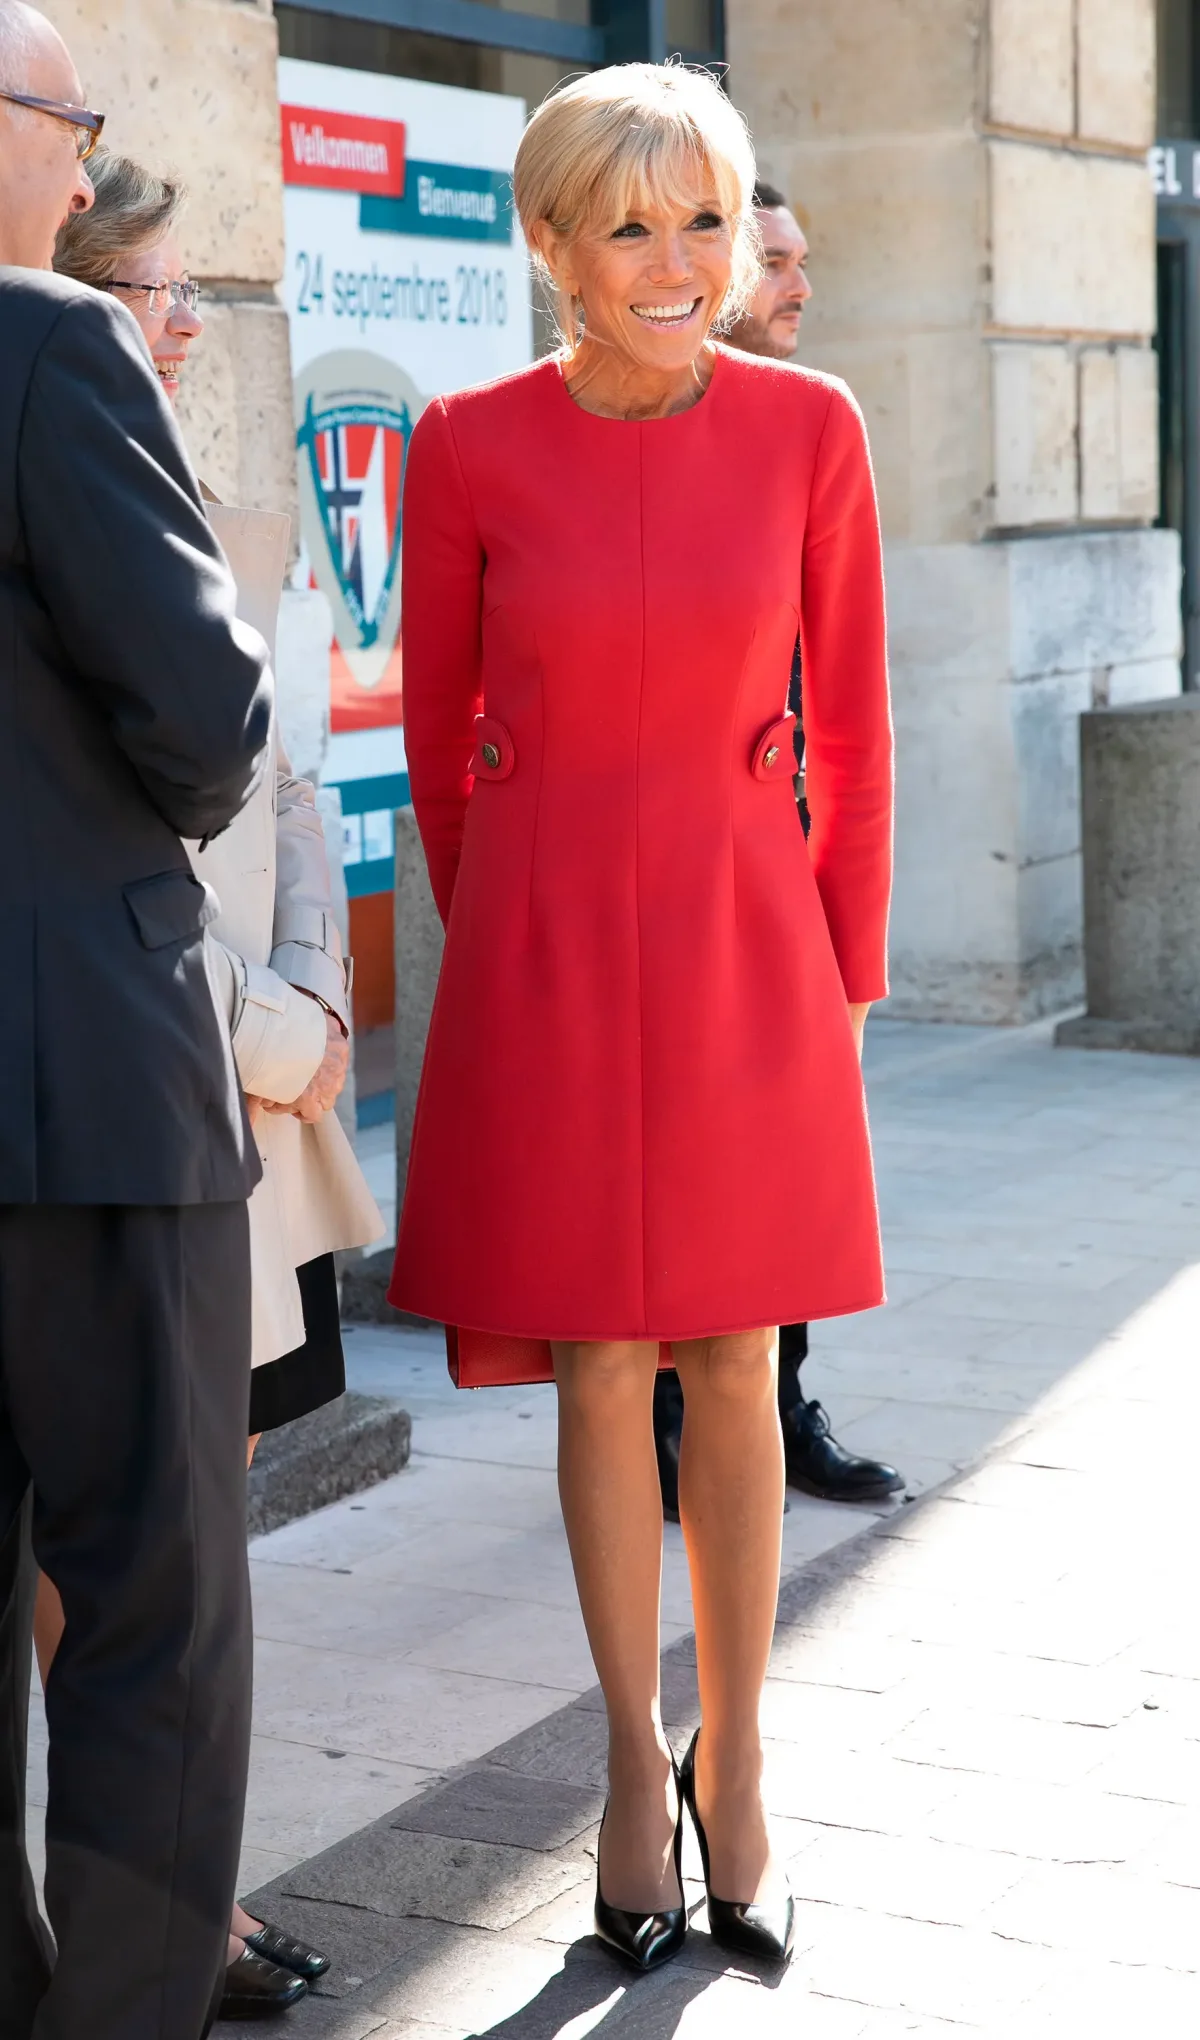 robe rouge femme 60 ans tenue chic femme en robe avec chaussures à talon noires